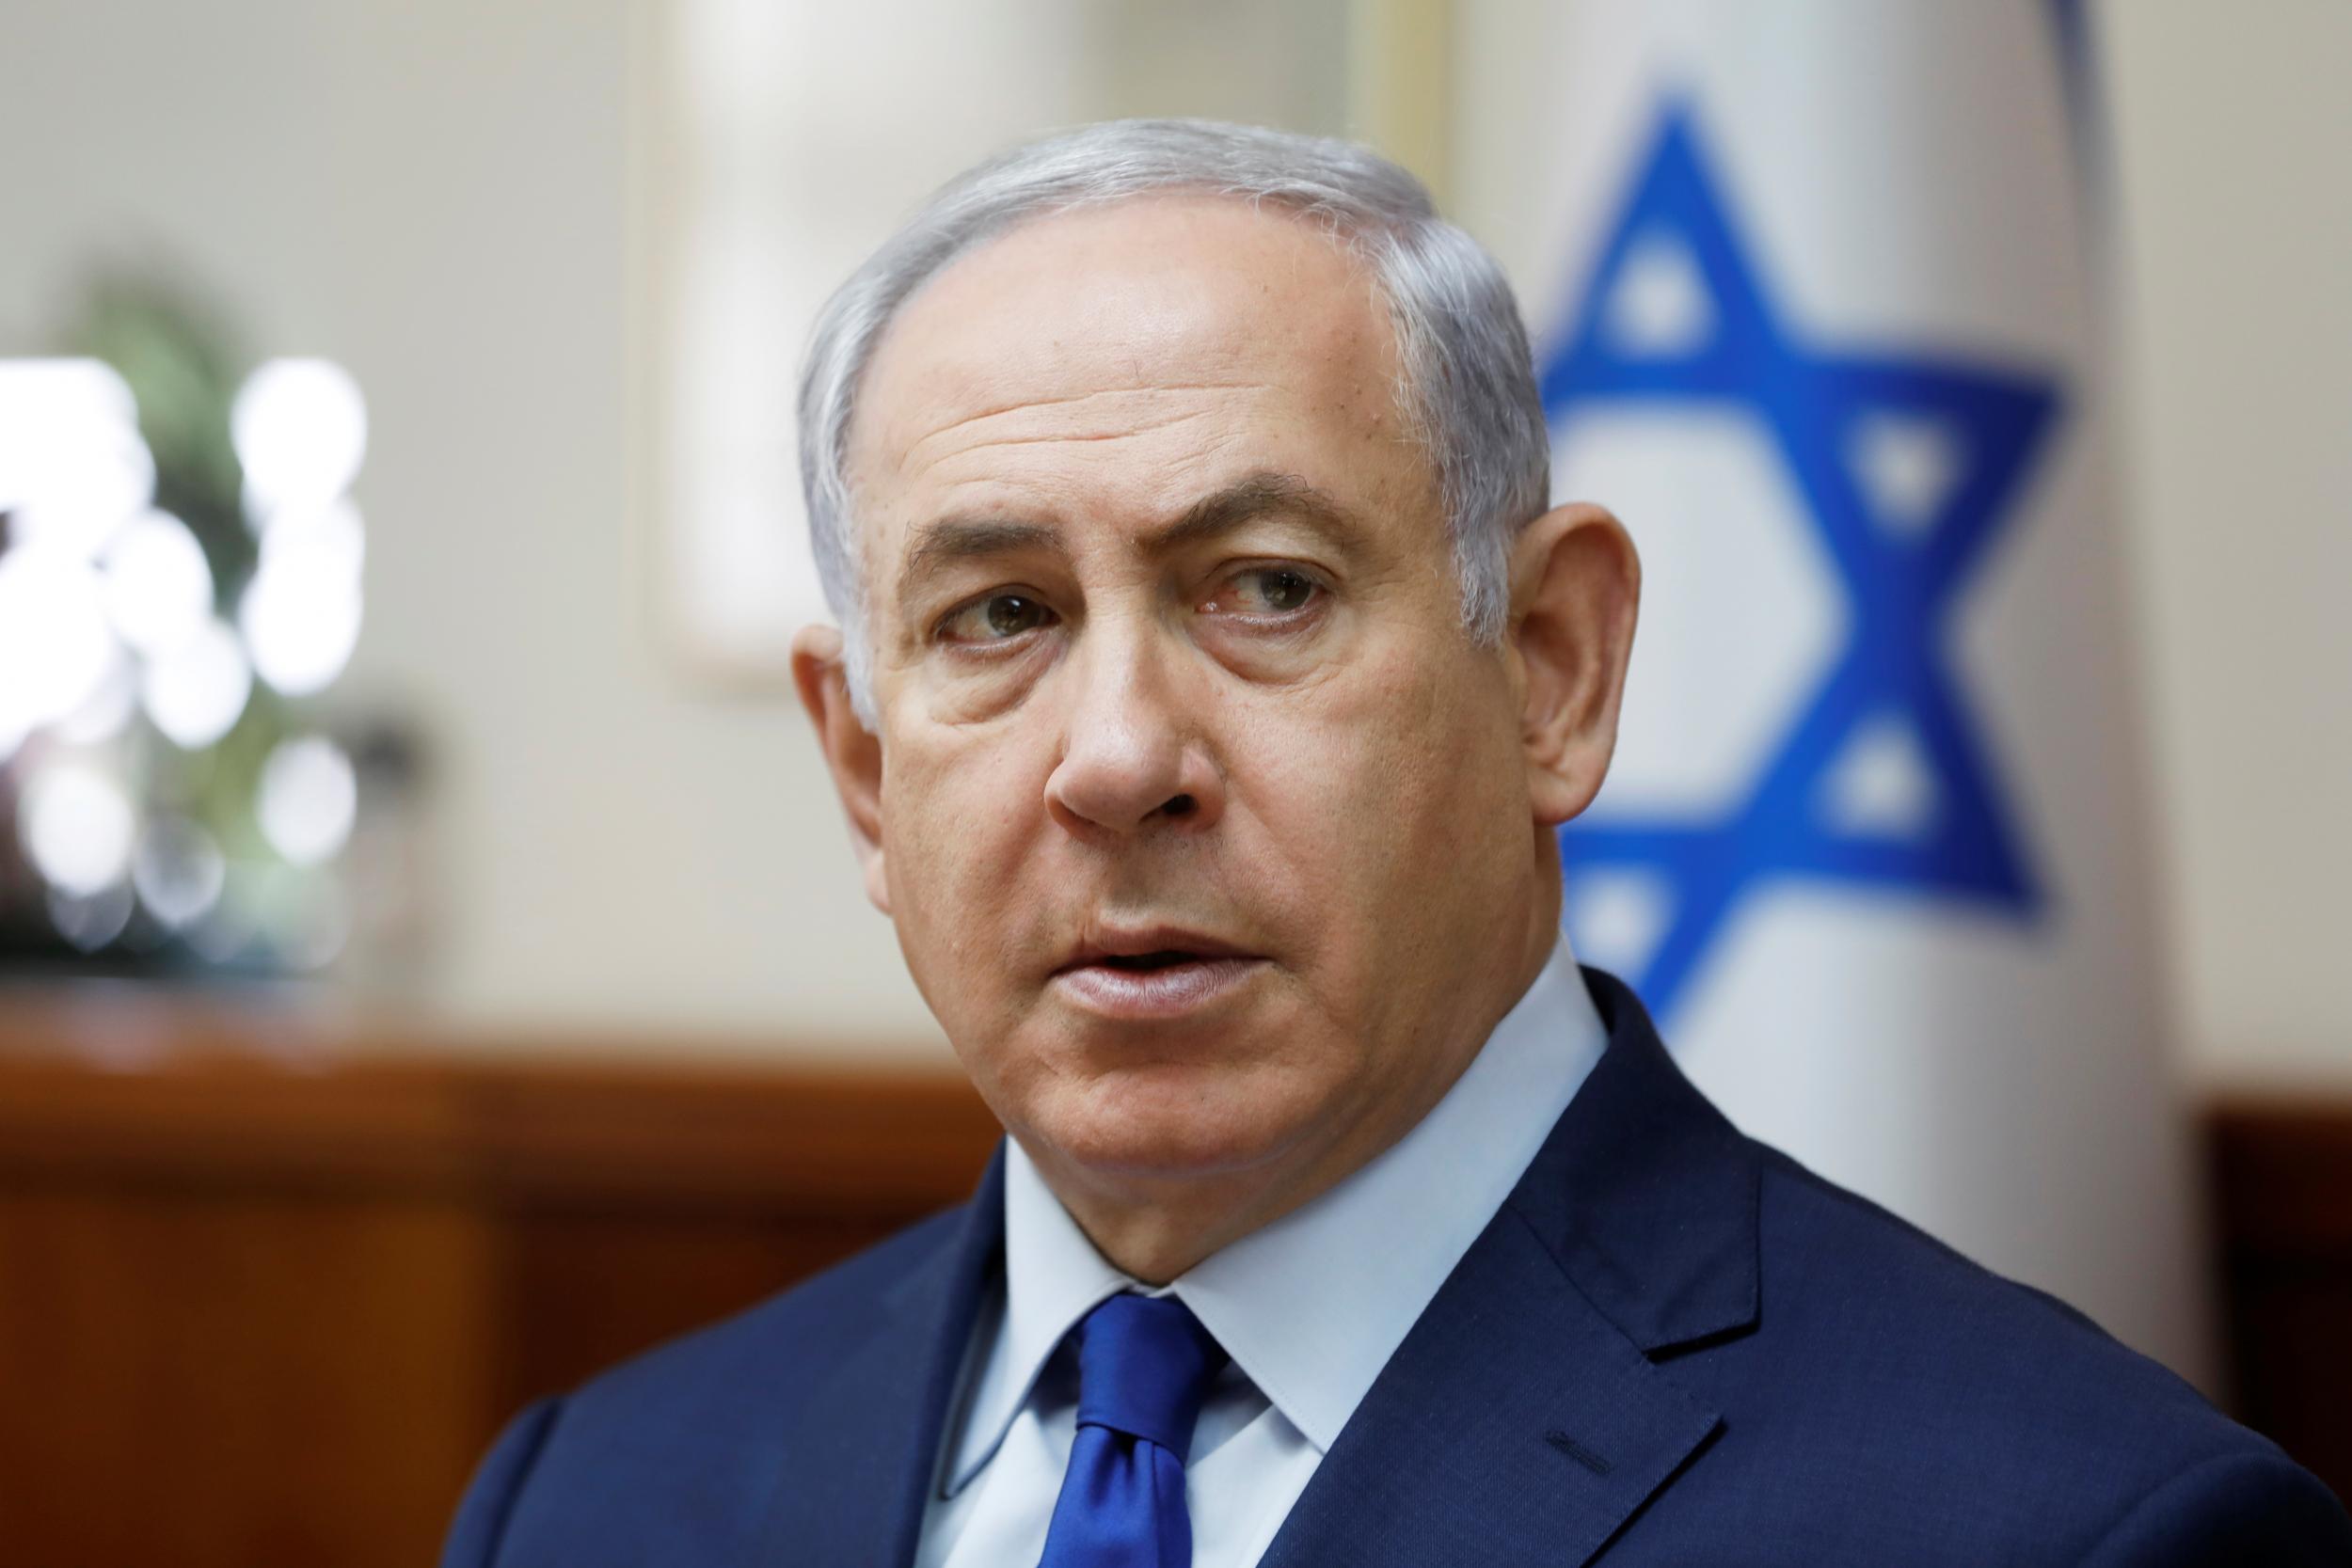 Israel: Encuestas indican que una amplia mayoría cree que Netanyahu tiene que renunciar a su cargo